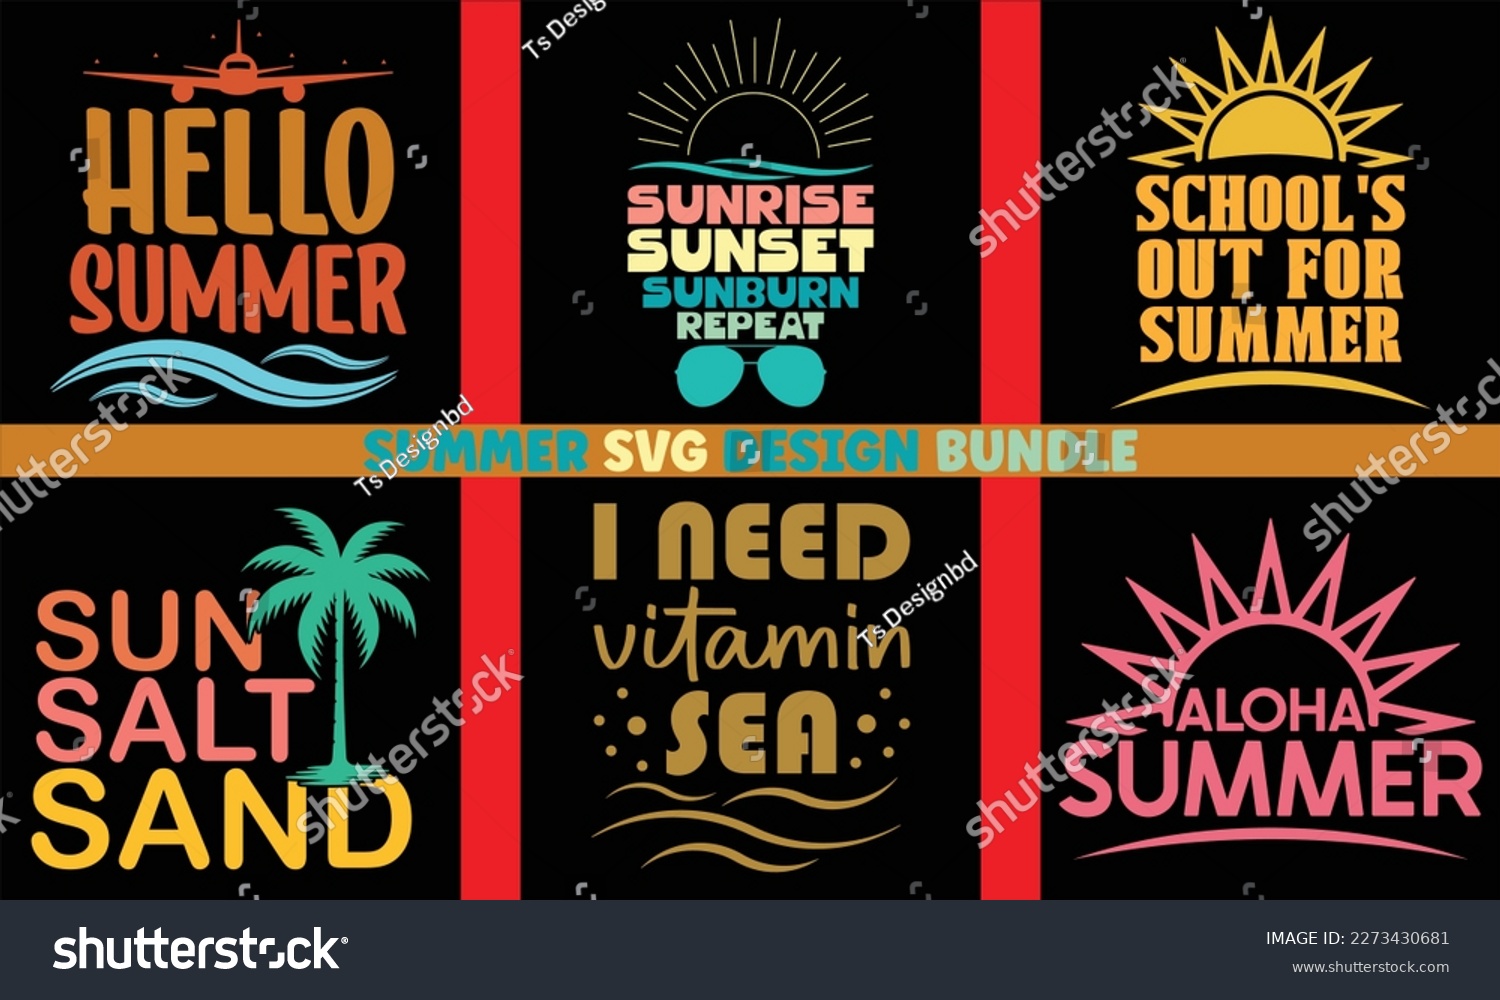 SVG of summer SVG design bundle Cut Files,Summer Beach Bundle SVG,Summer Quotes SVG Designs Bundle,Summer Design for Shirts,Hello Summer quotes t shirt designs bundle,Summertime Svg,Quotes about Summer svg